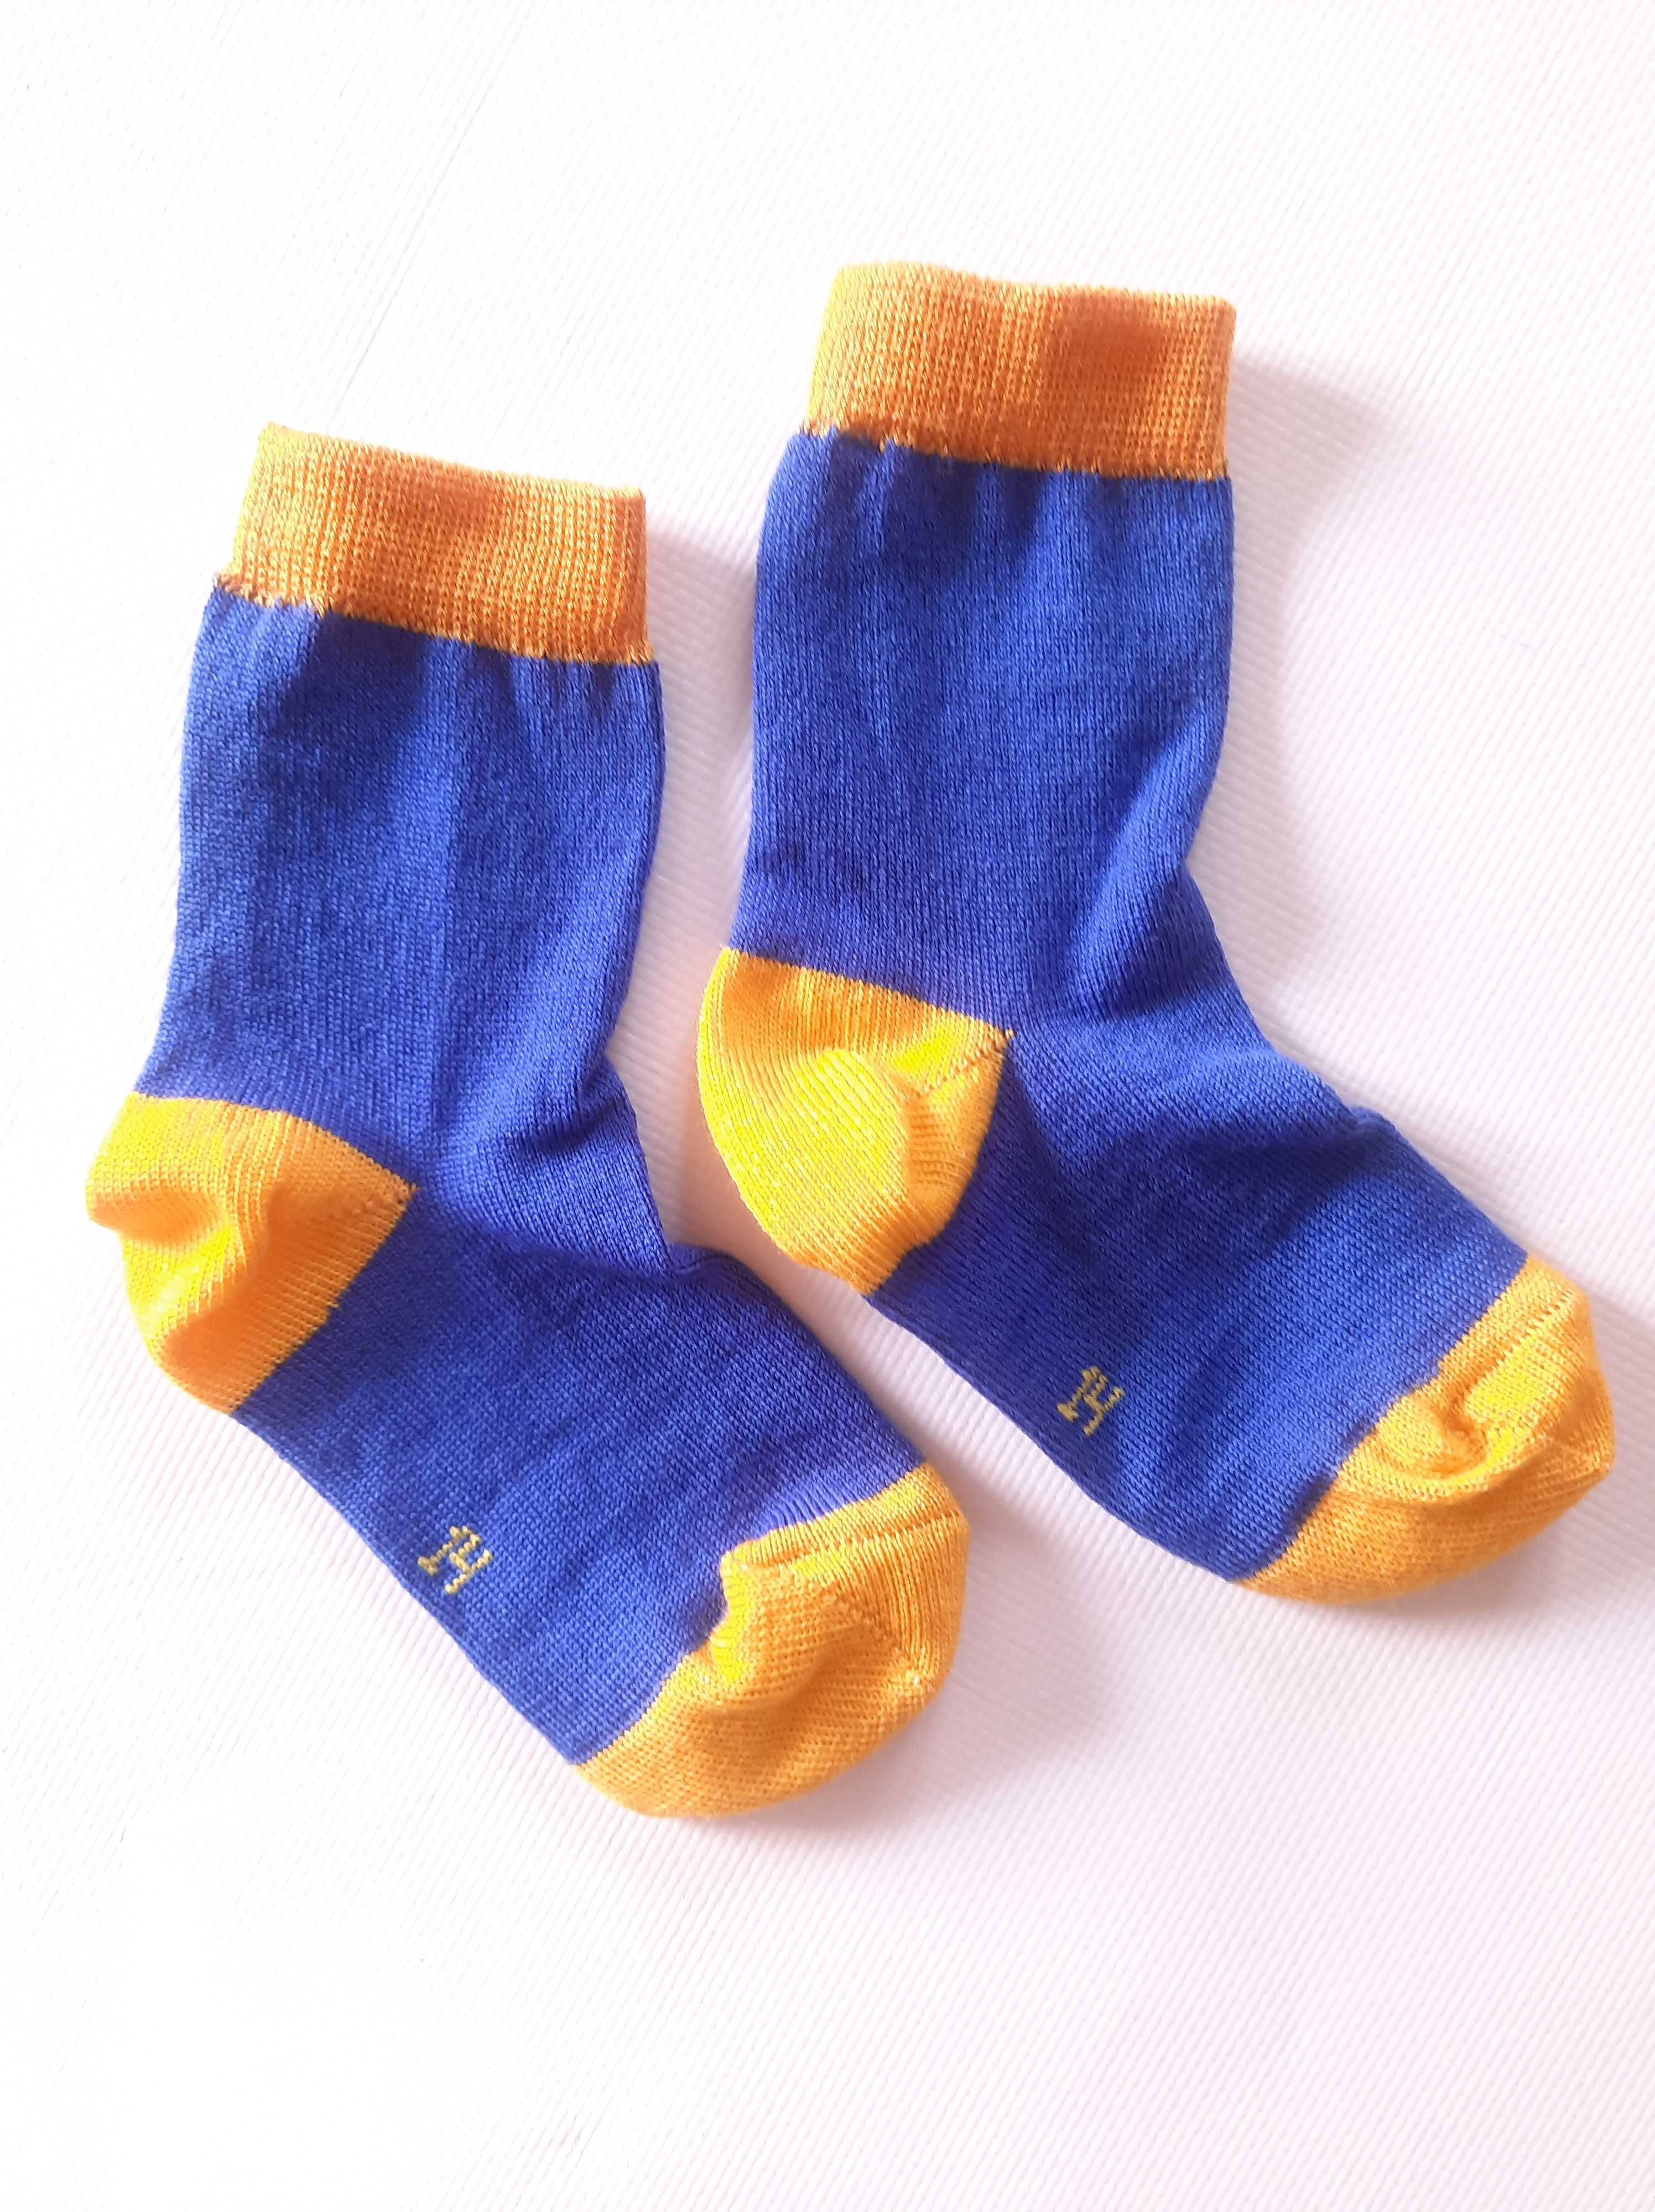 Дитячі шкарпетки з 90%  вовни мериноса BabyKo. Термоноски шерстяні